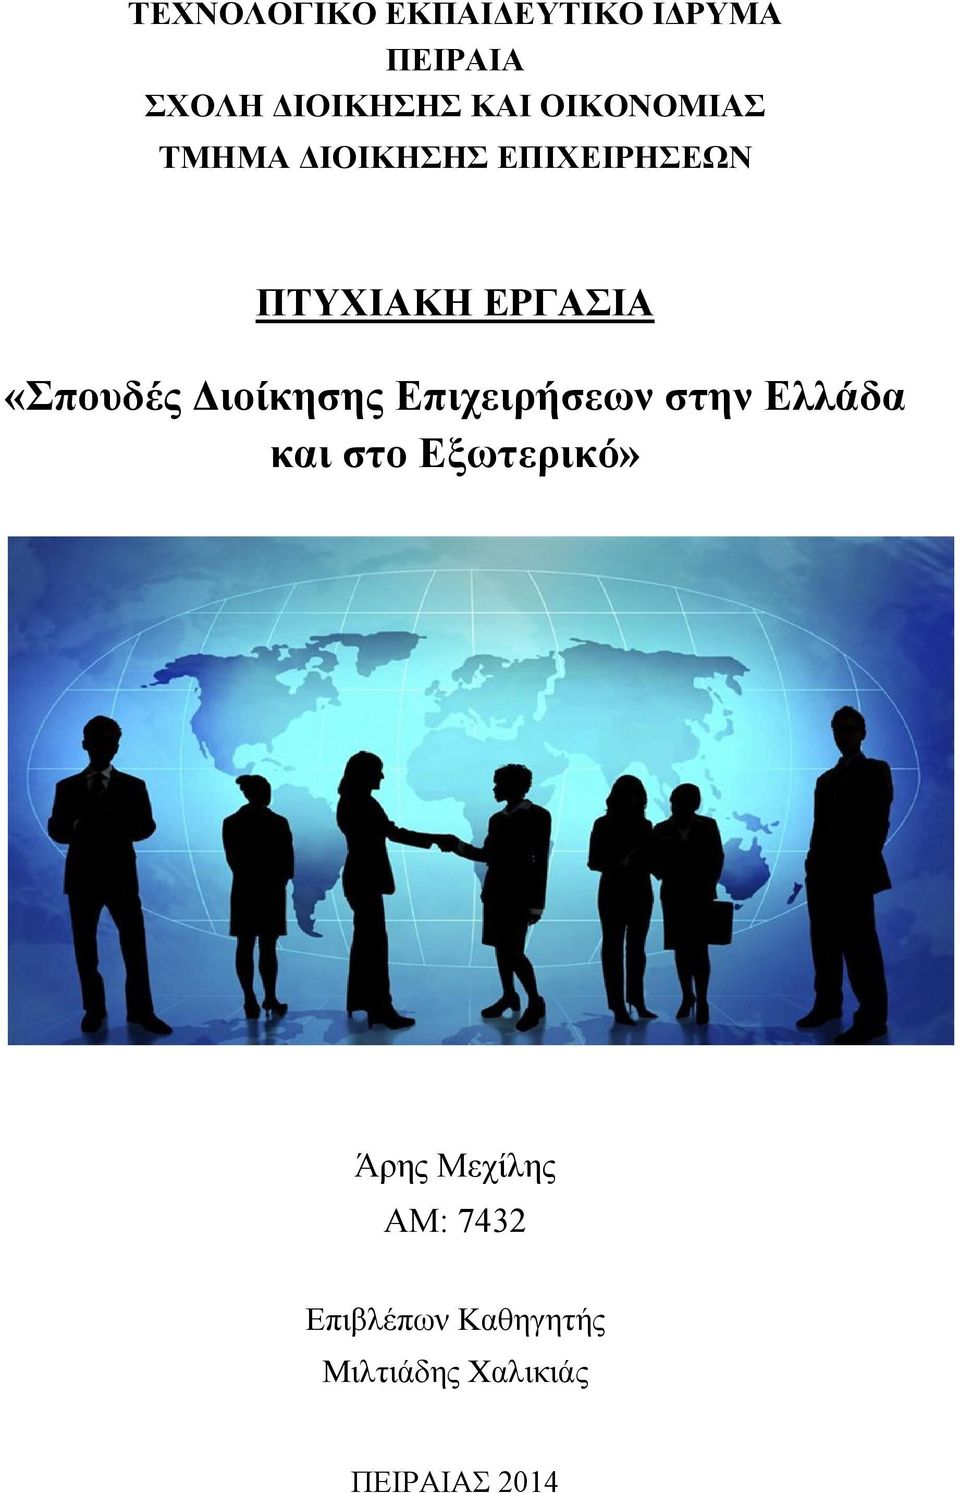 «Σπουδές Διοίκησης Επιχειρήσεων στην Ελλάδα και στο Εξωτερικό»